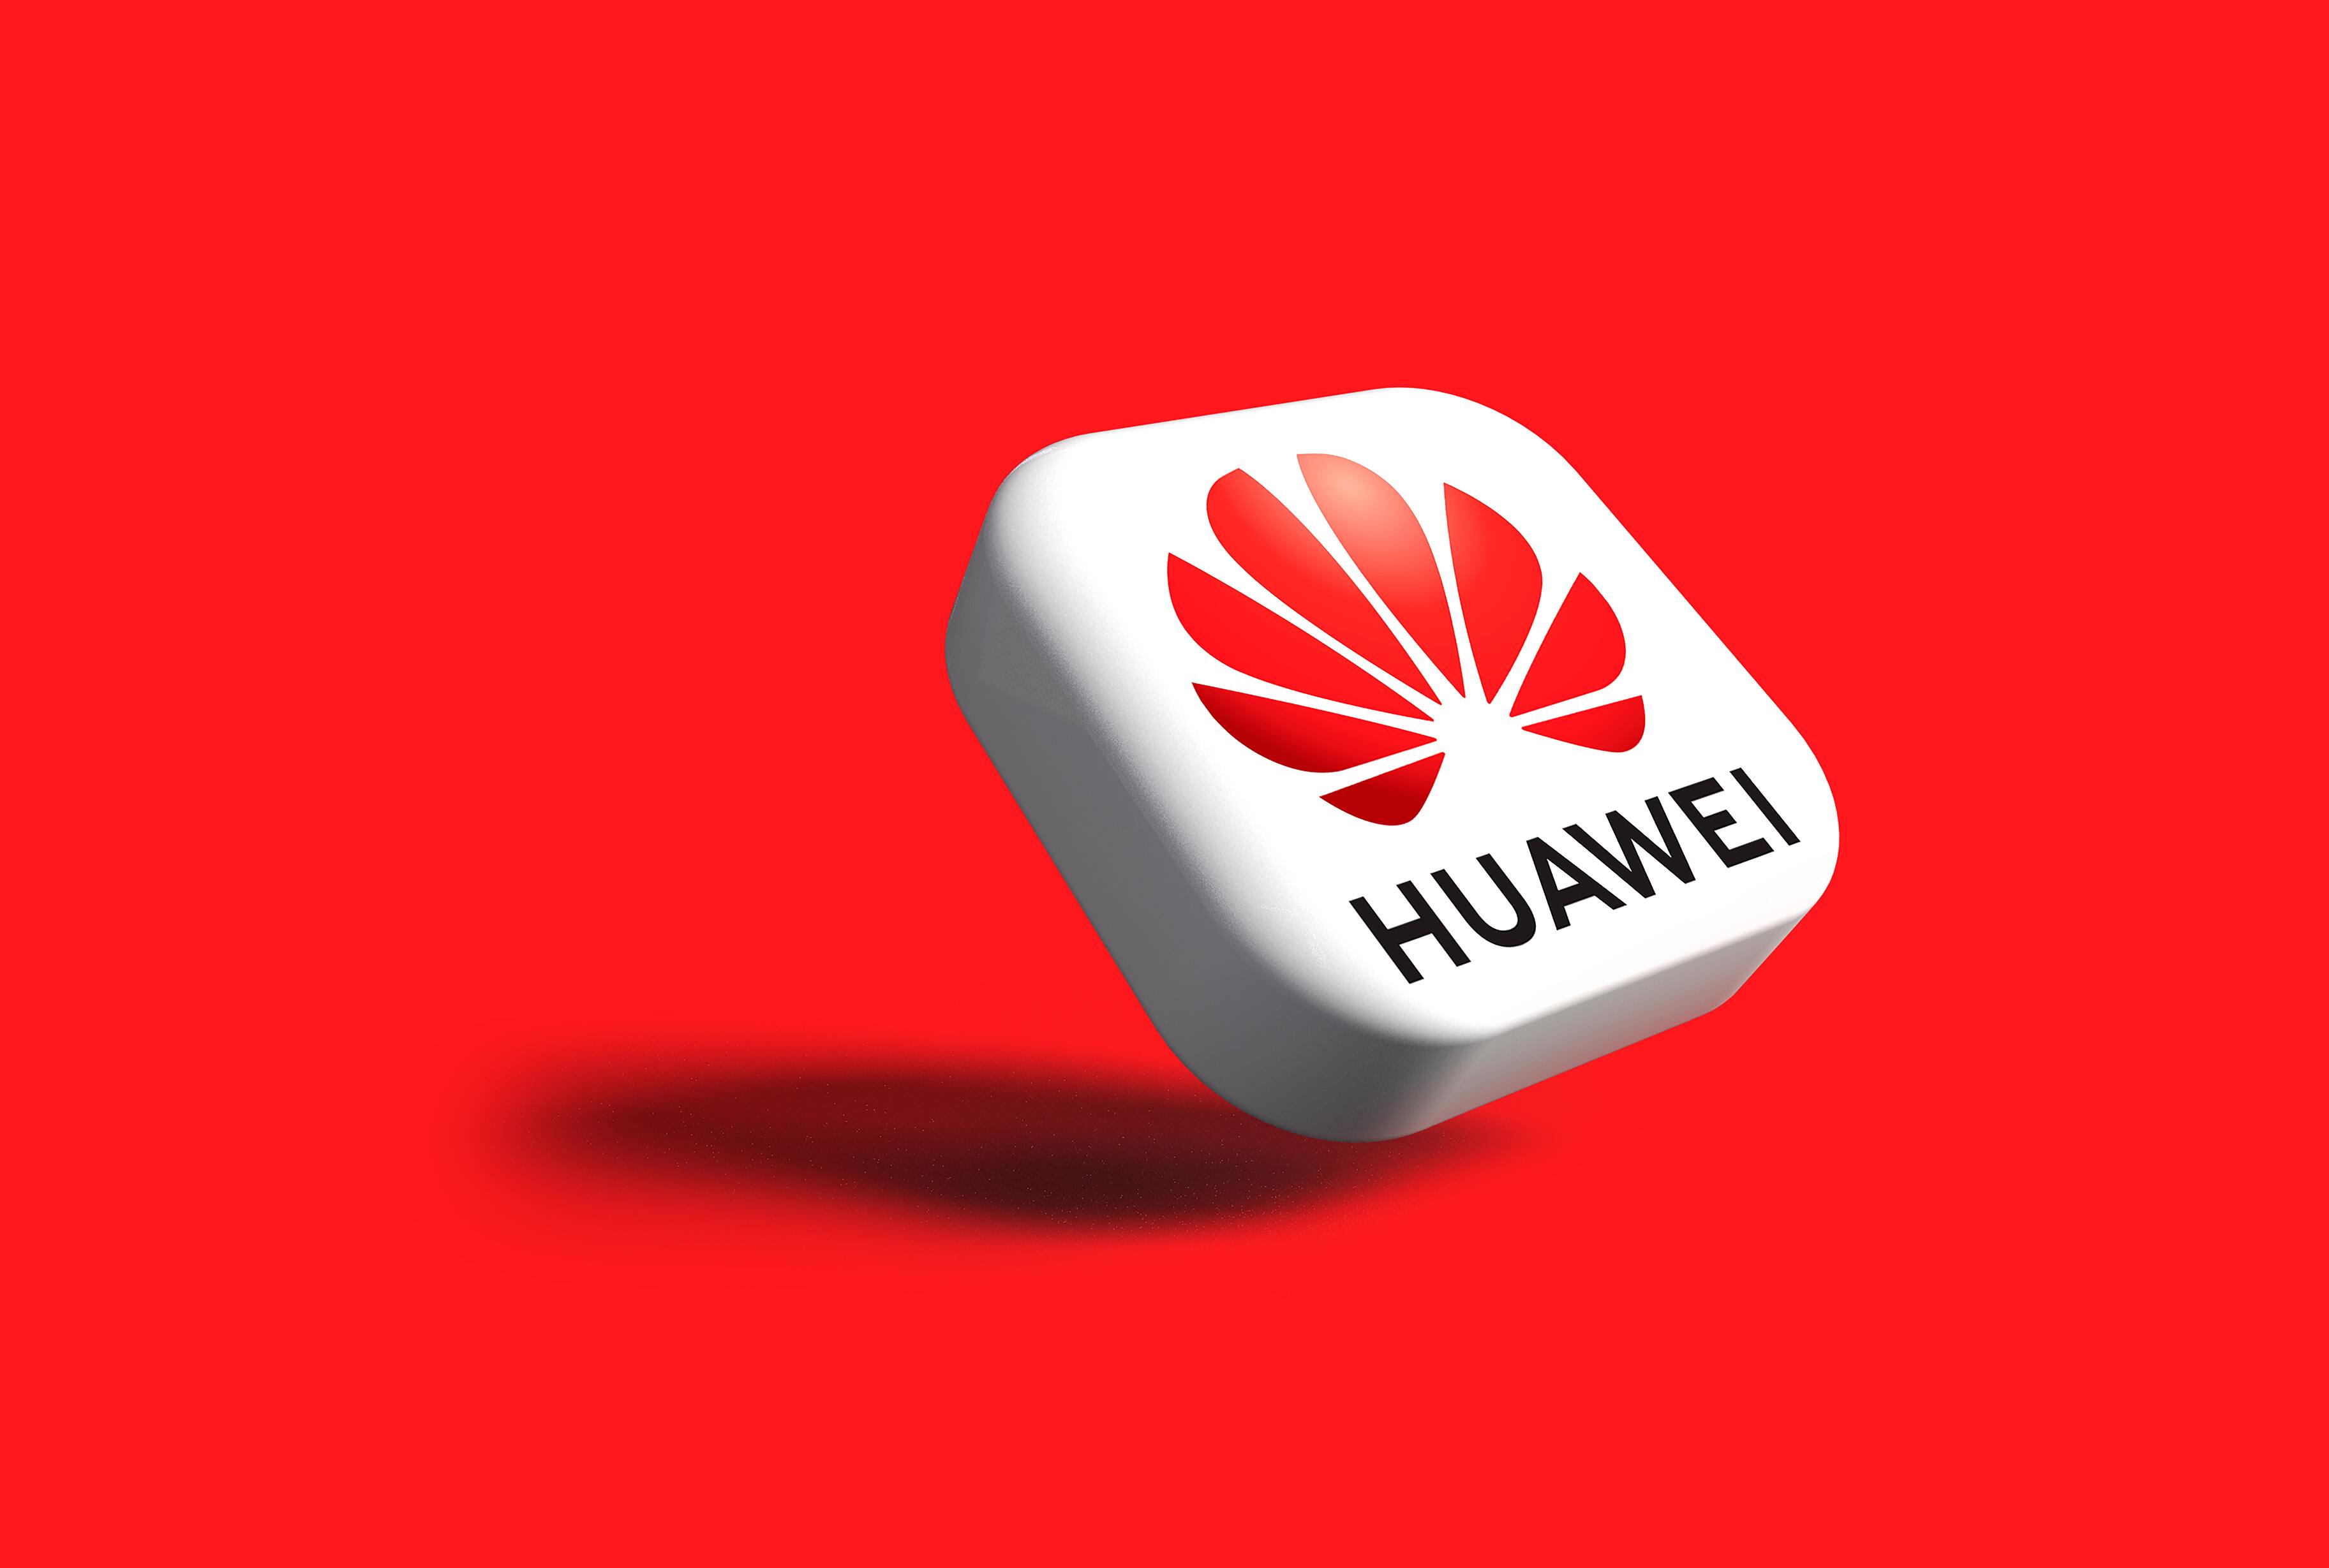 Huawei   